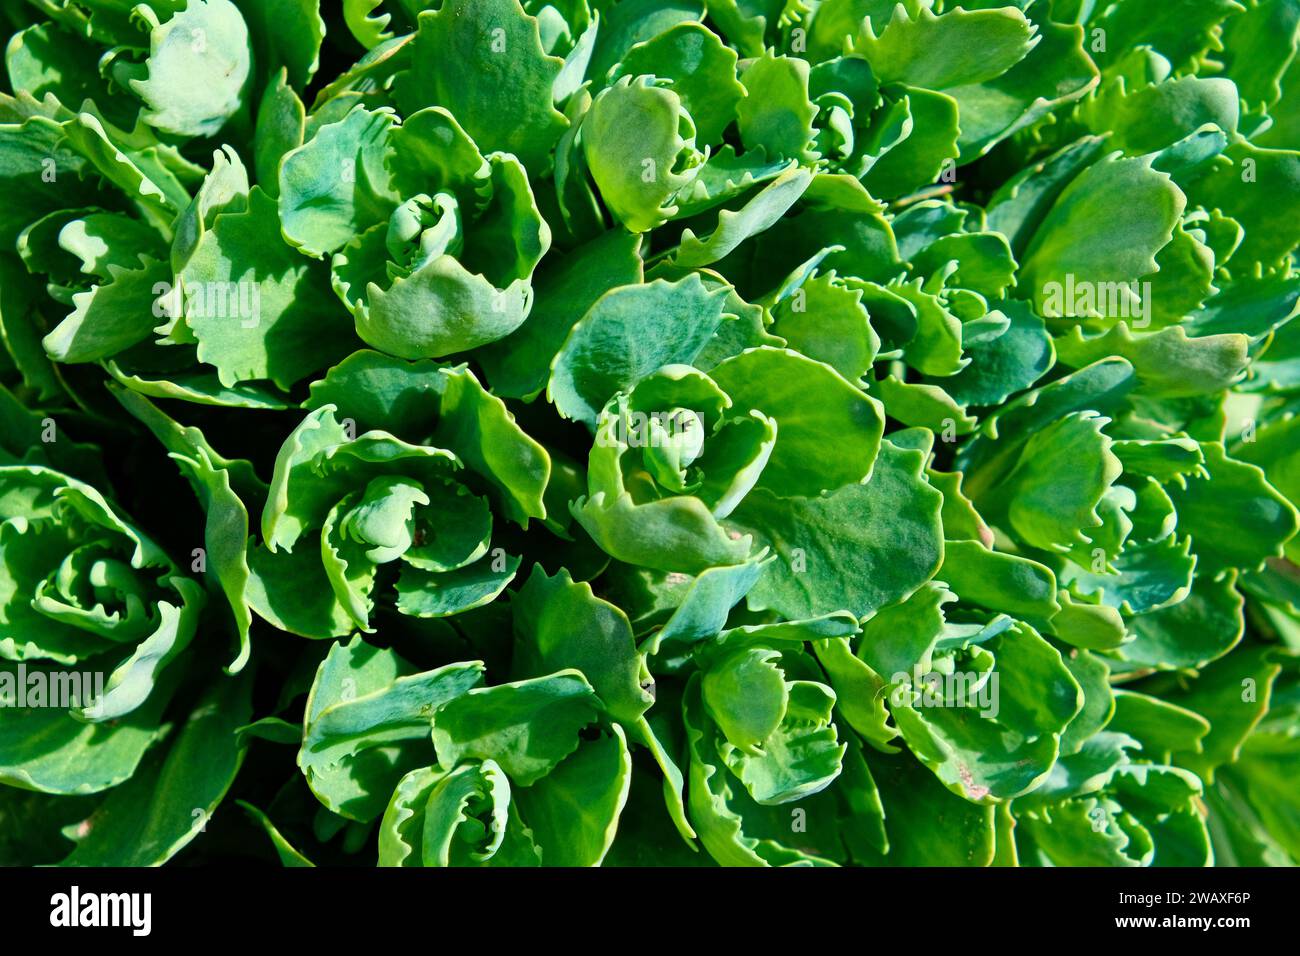 L'image montre un gros plan de plantes succulentes vertes vibrantes avec des feuilles épaisses et charnues sous une lumière vive. Jeunes pousses d'orpine (Sedum telephium). B Banque D'Images